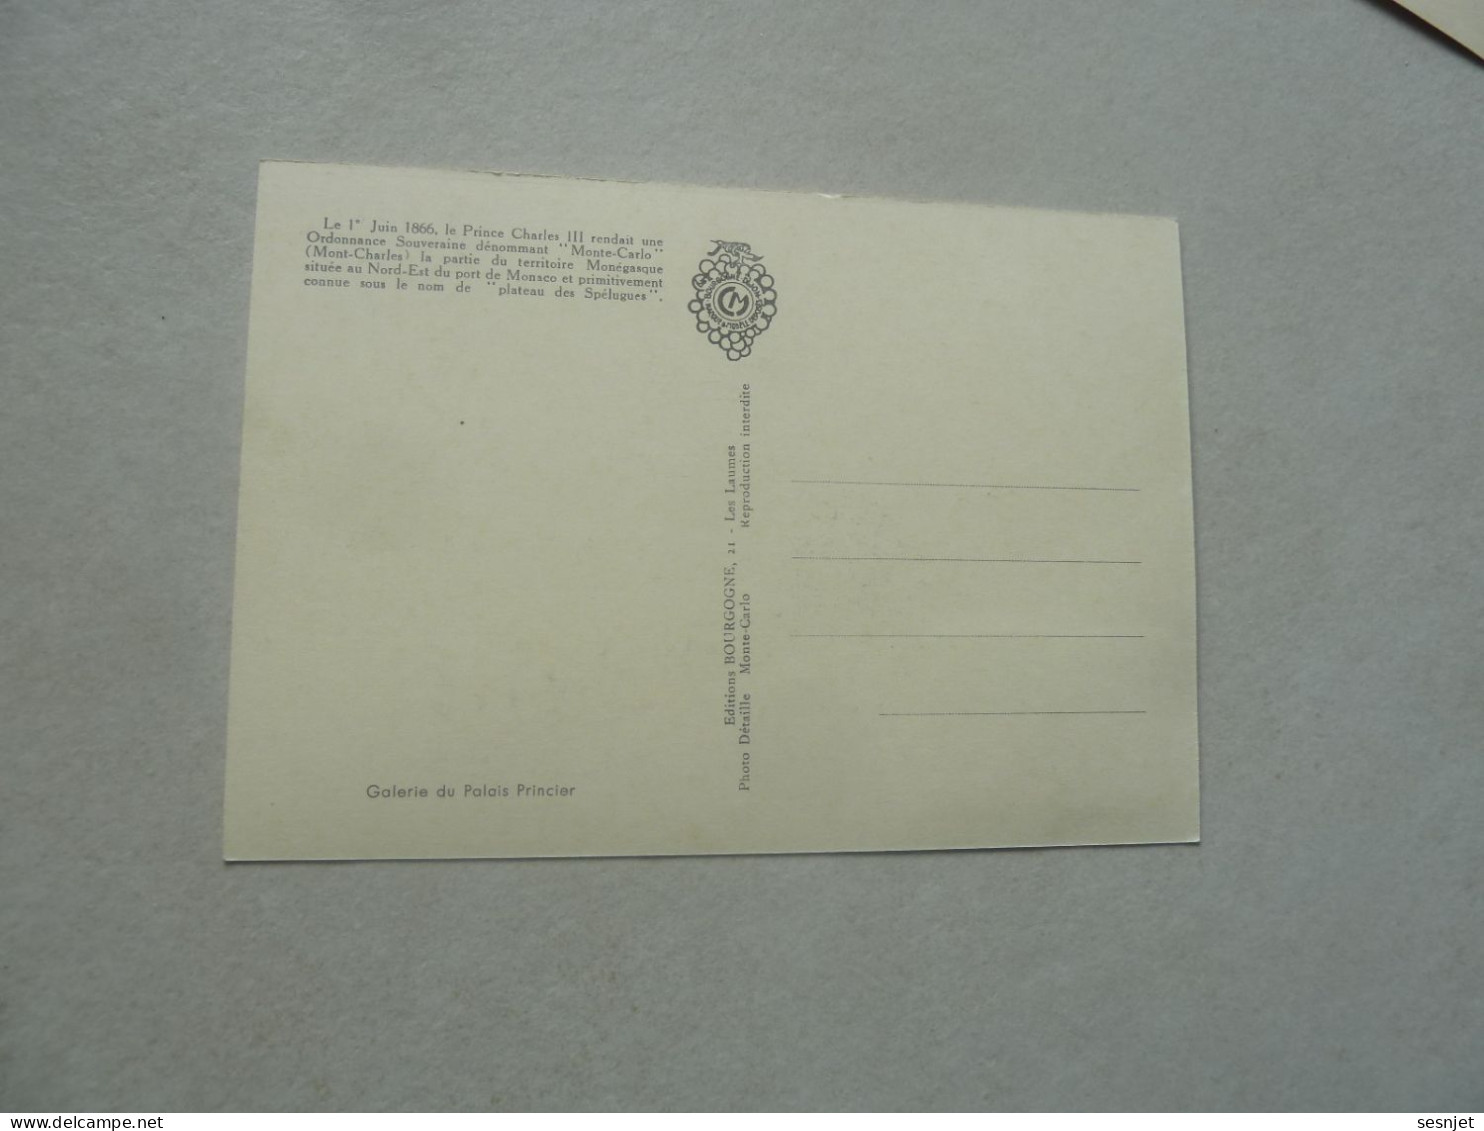 Monaco - Prince Charles III (1818-1889) - 12c. - Yt 690 - Carte Premier Jour D'Emission - Année 1966 - - Maximum Cards